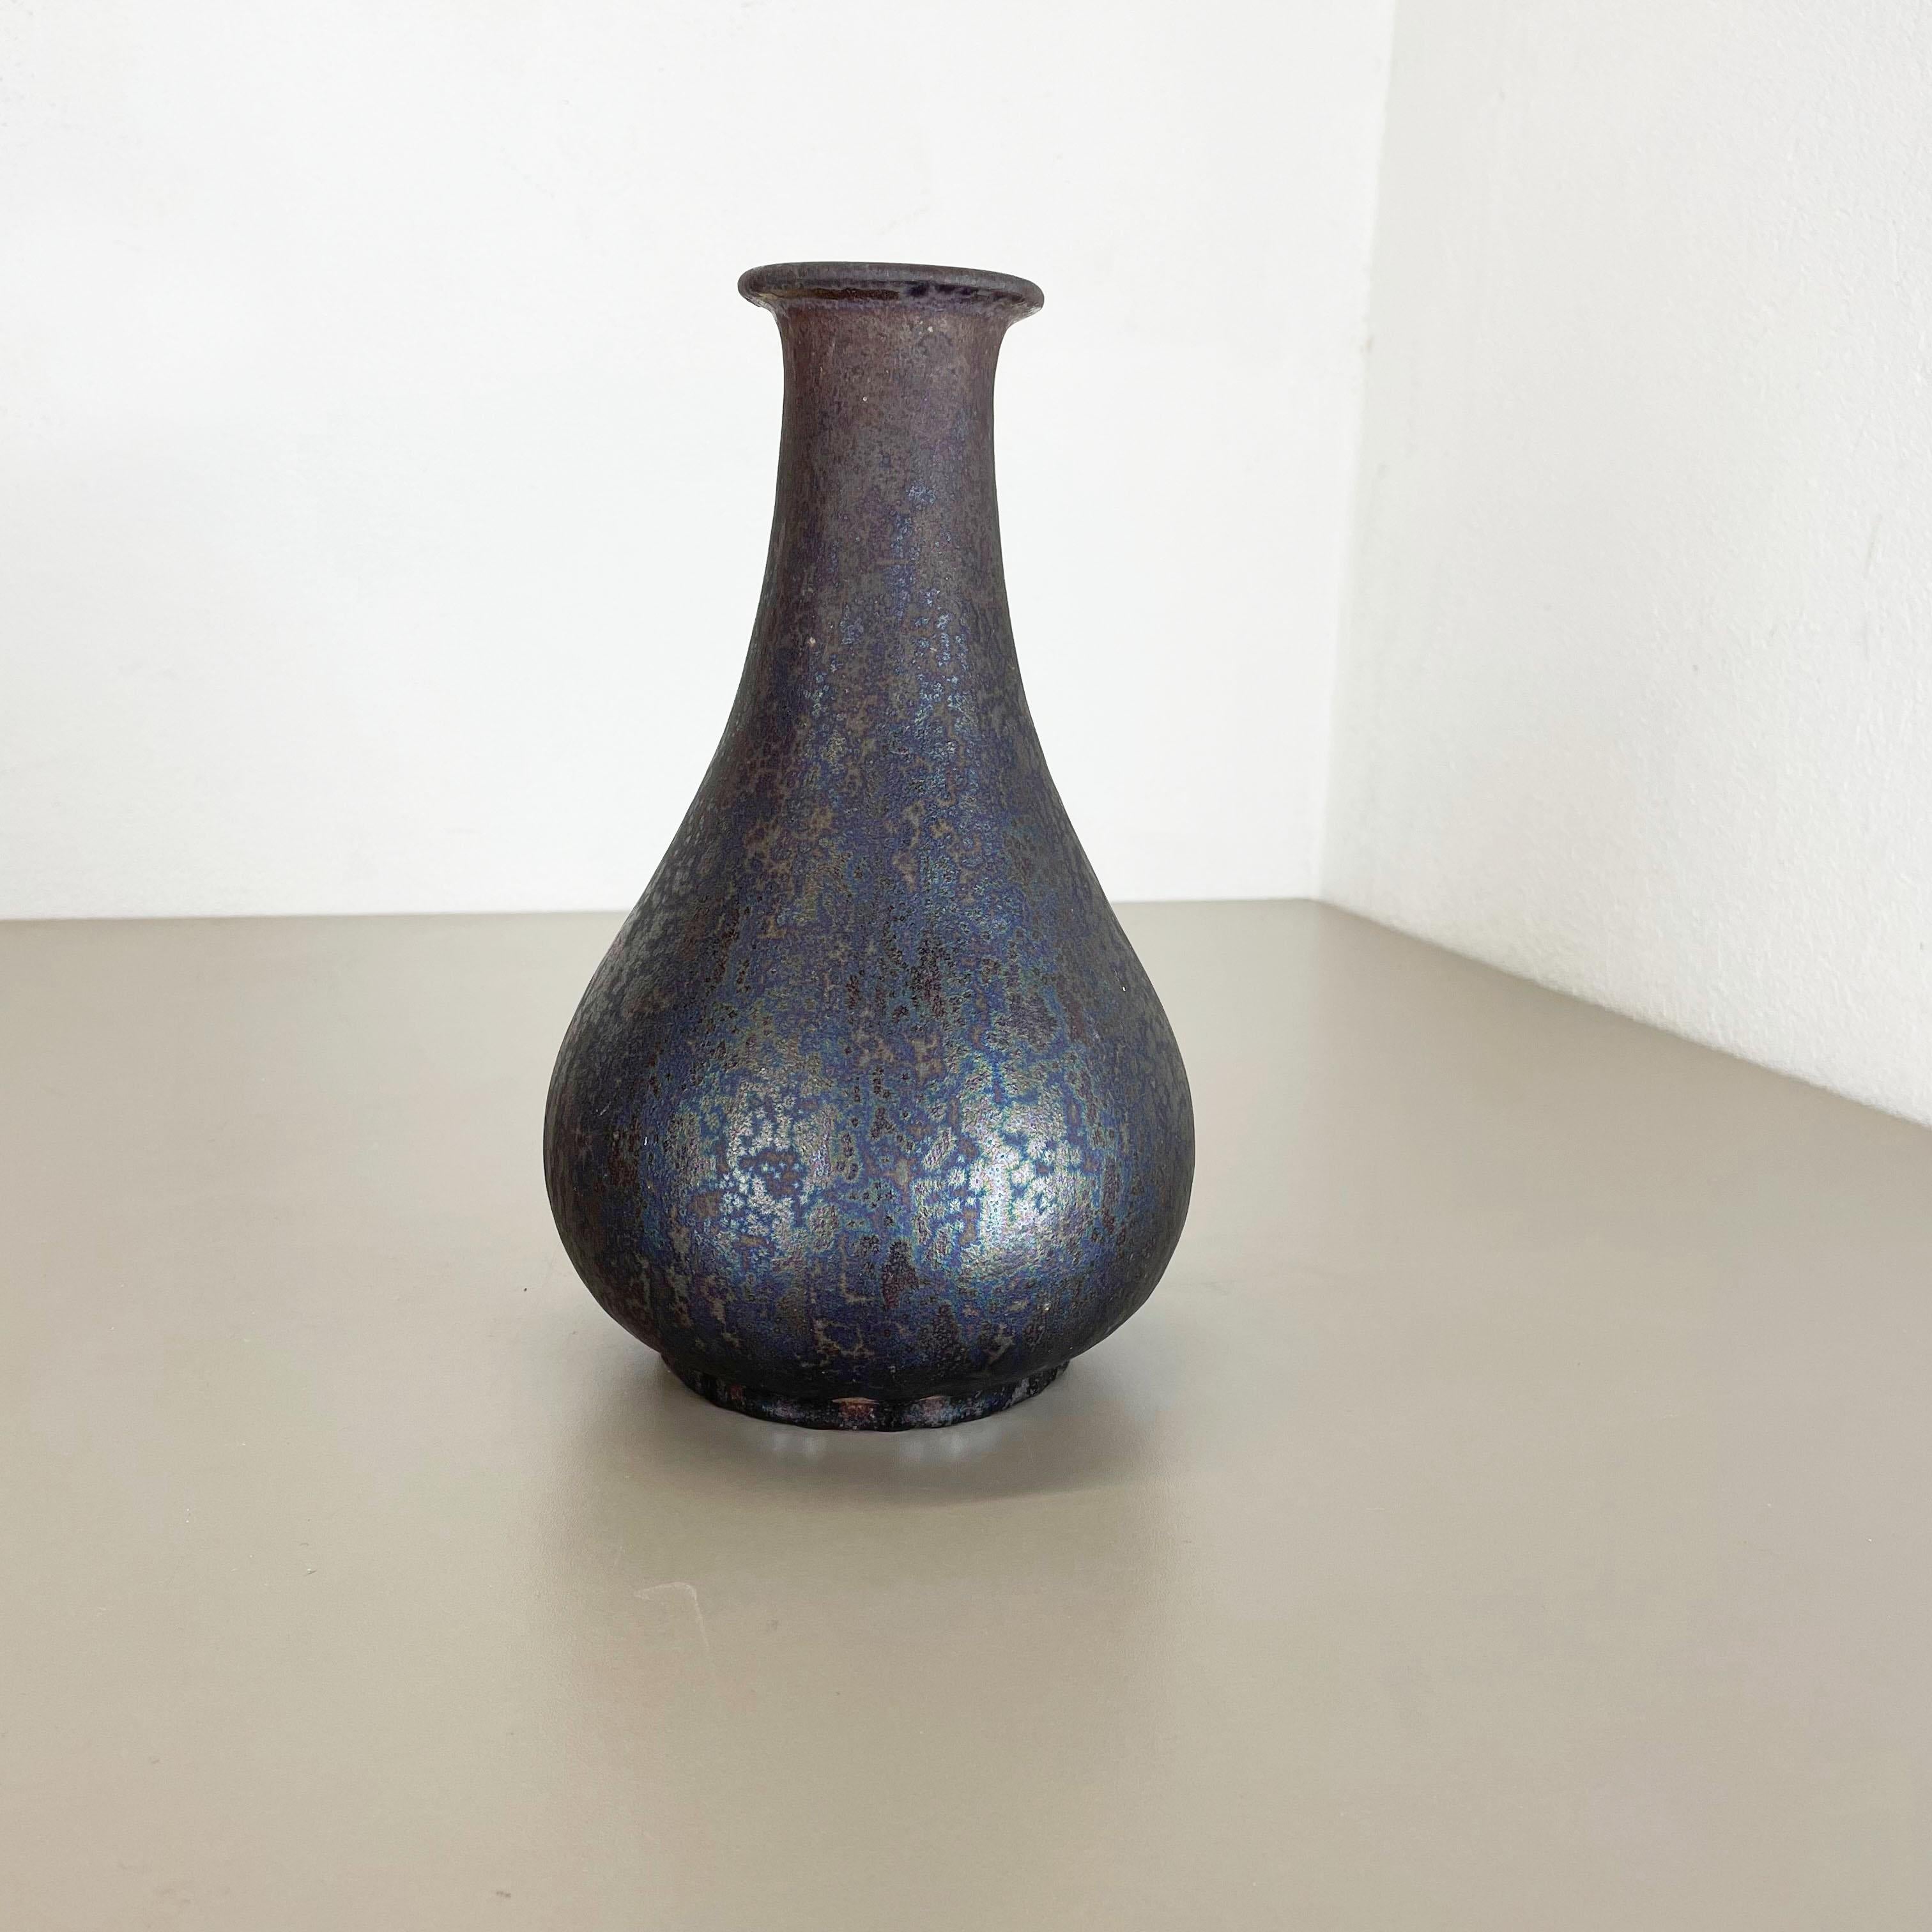 Article :

Vase d'art en lave grasse


Modèle : 830


Producteur :

Ruscha, Allemagne



Décennie :

1970s




Ce vase vintage original a été produit dans les années 1970 en Allemagne. Il est réalisé en poterie céramique en